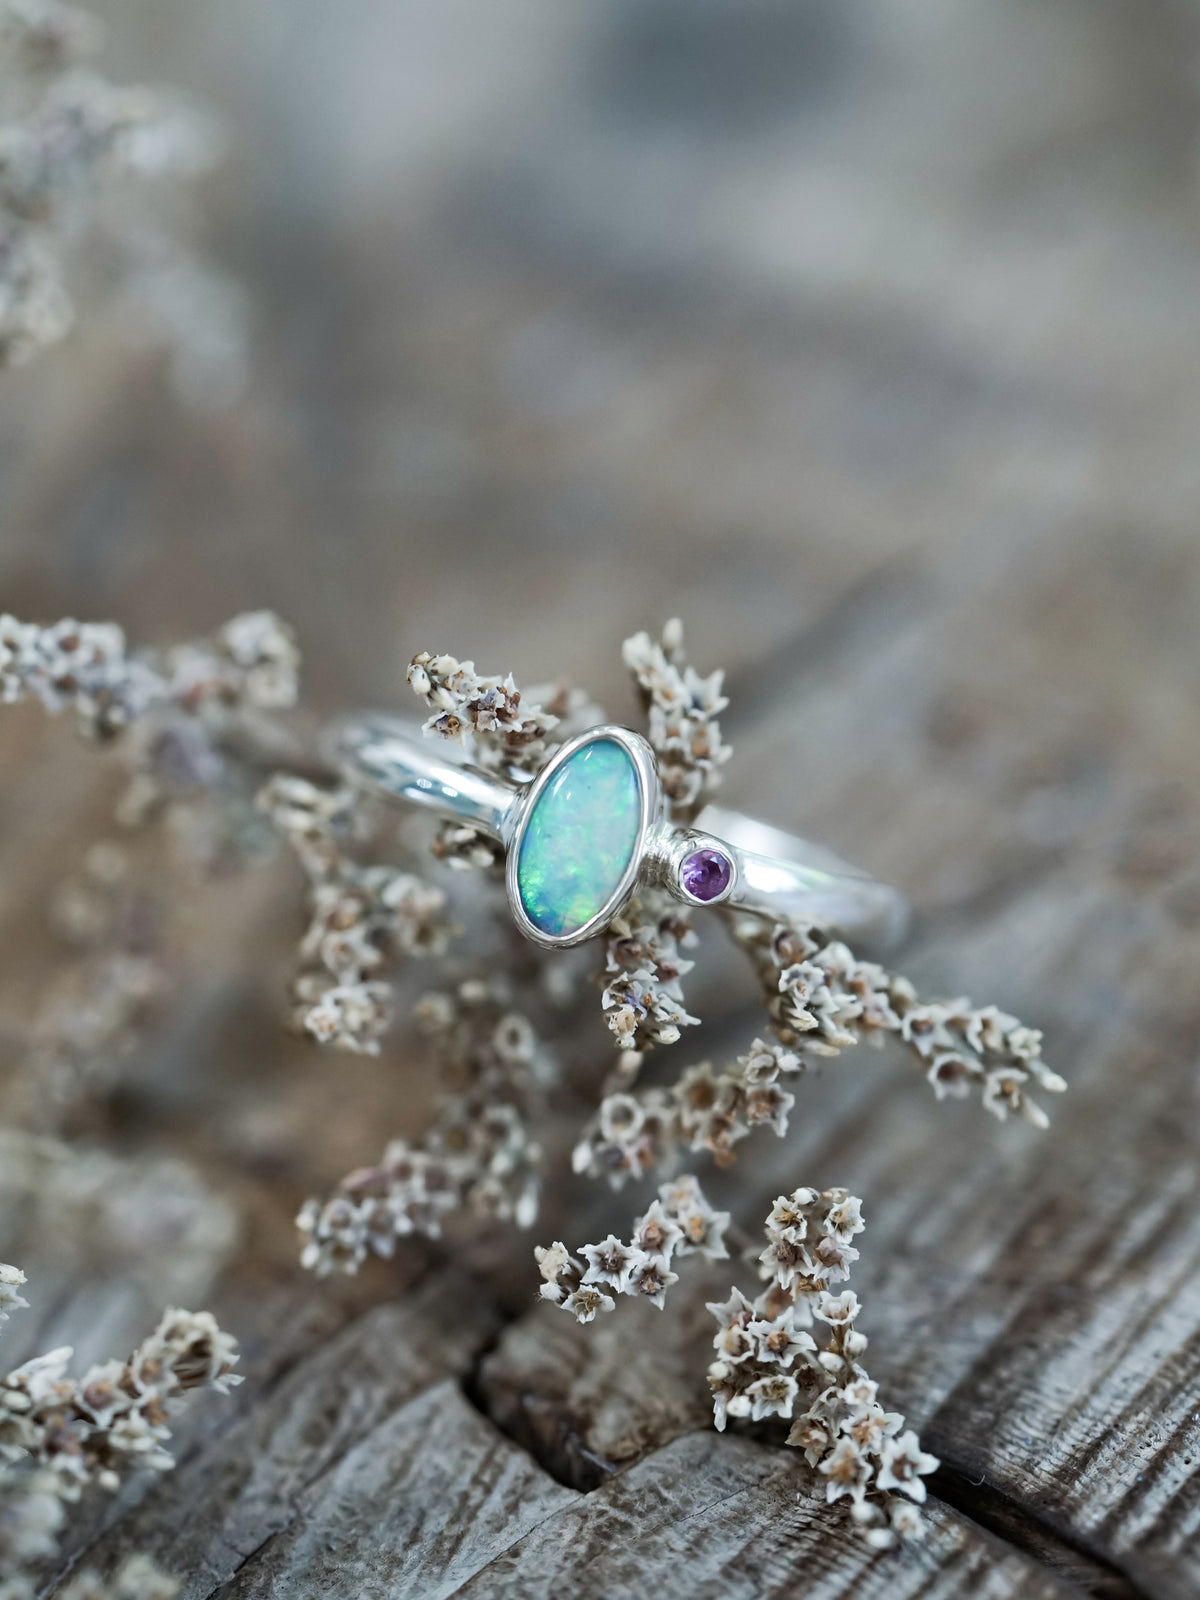 Best Opal Engagement Rings for Women - Prettiest Opal Engagement Rings